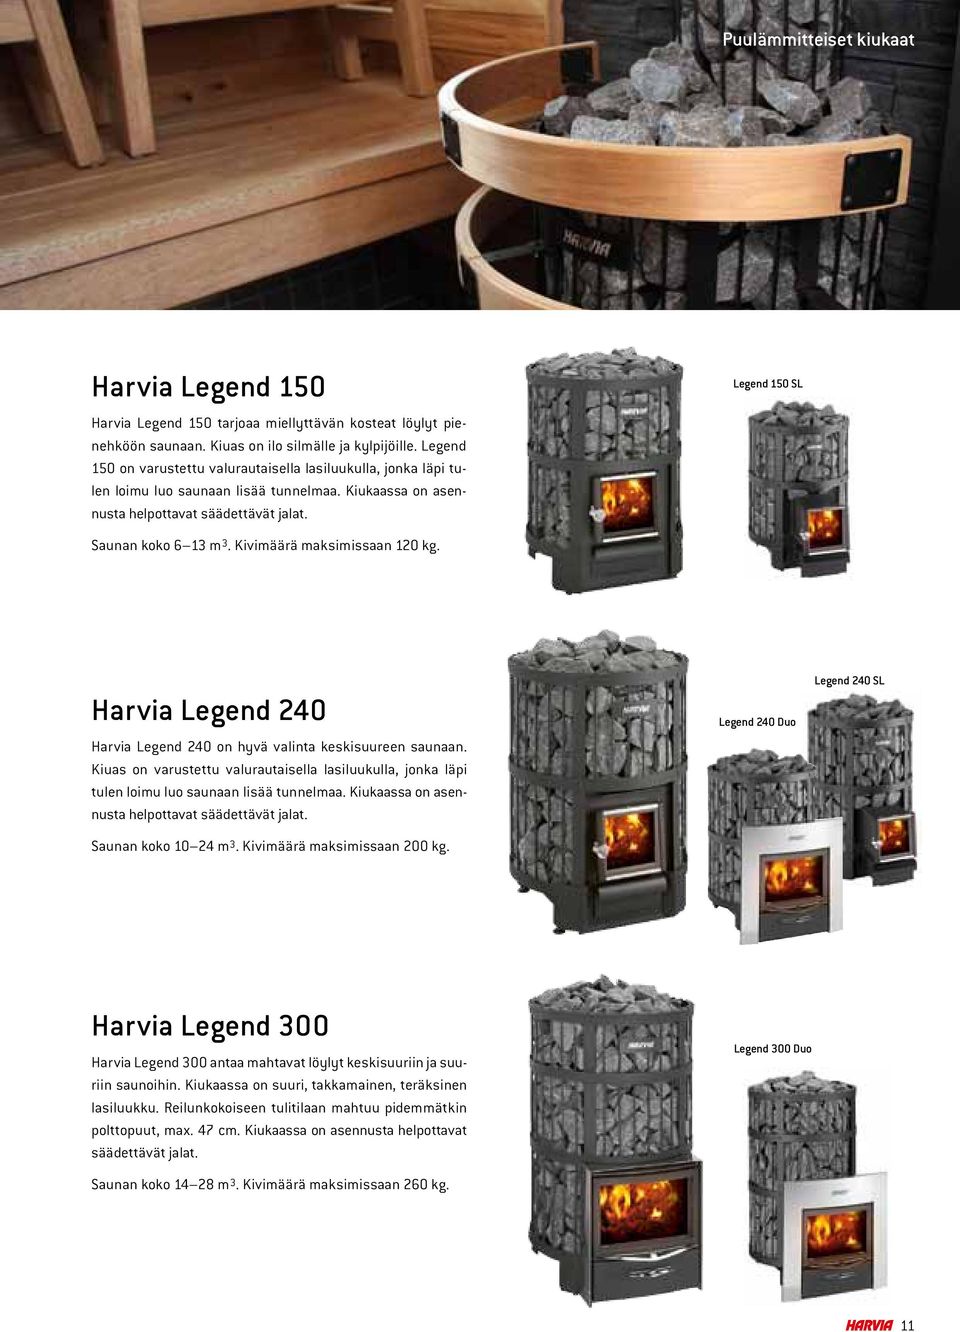 Kiviäärä aksiissaan 120 kg. Harvia Legend 240 Harvia Legend 240 on hyvä valinta keskisuureen saunaan.